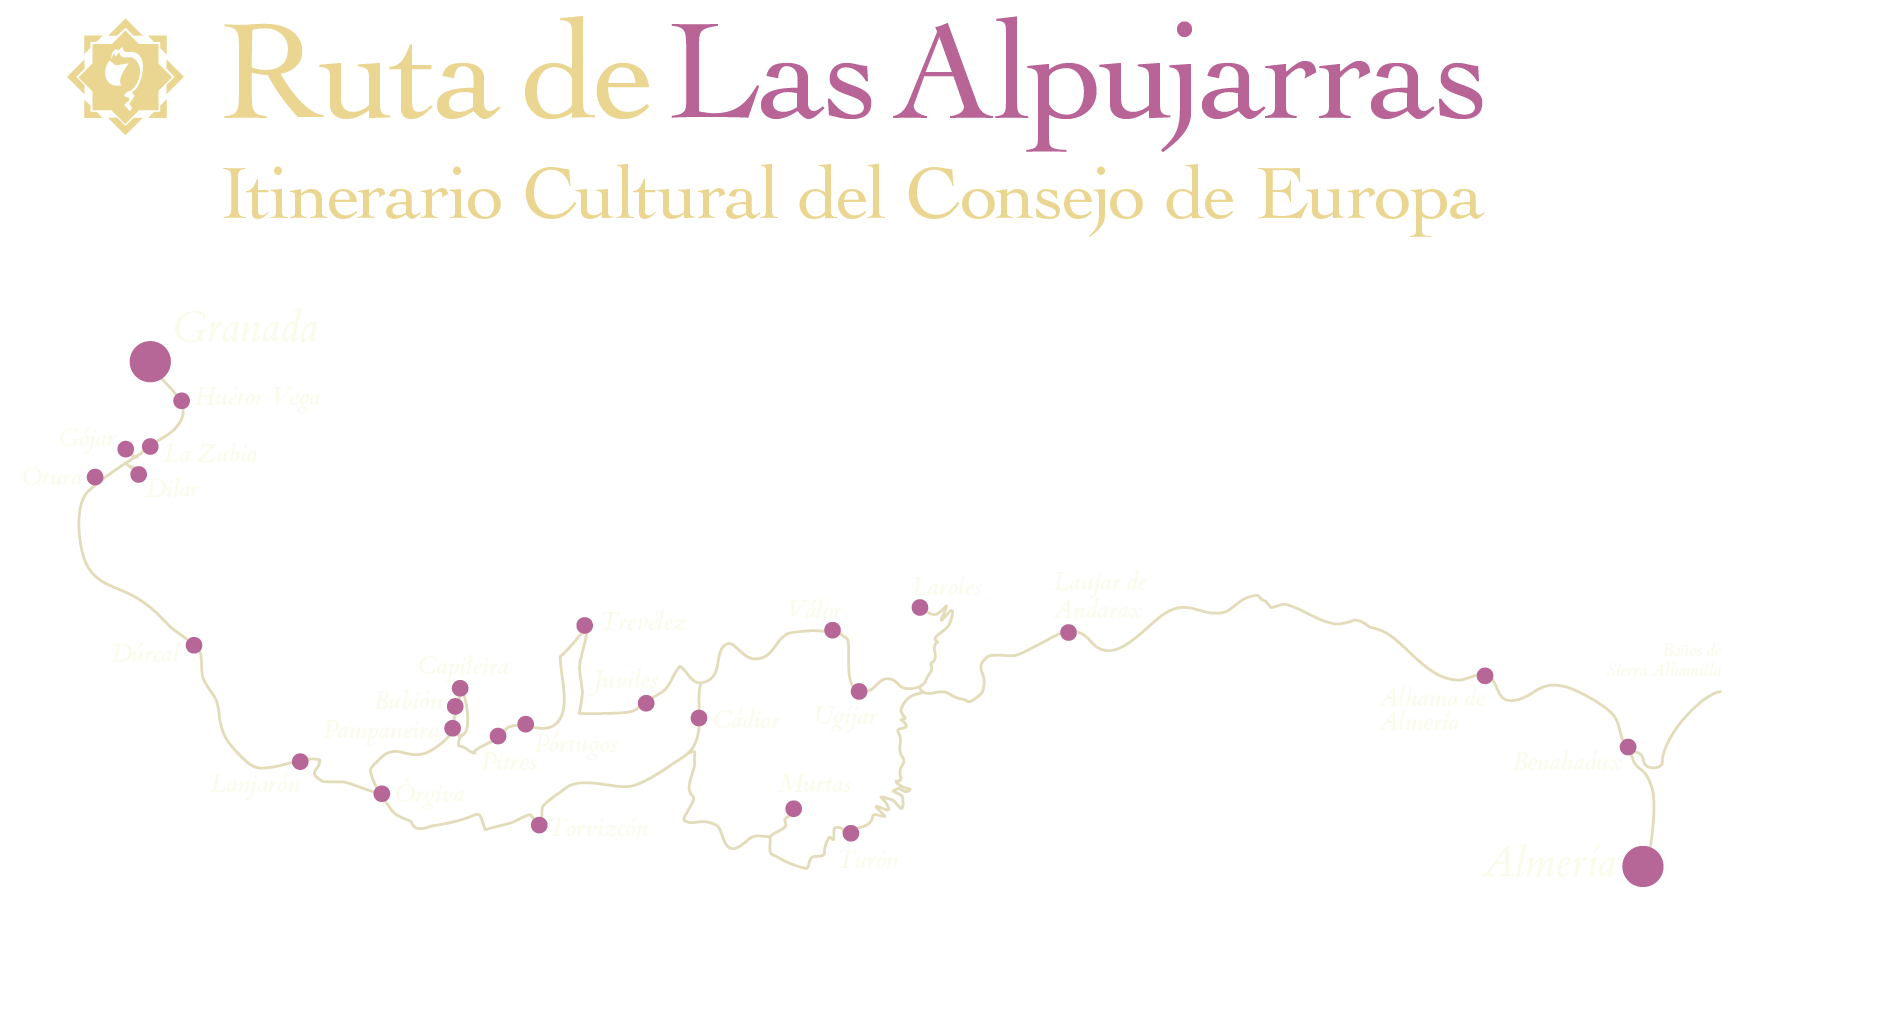 Mapa de la Ruta de las Alpujarras